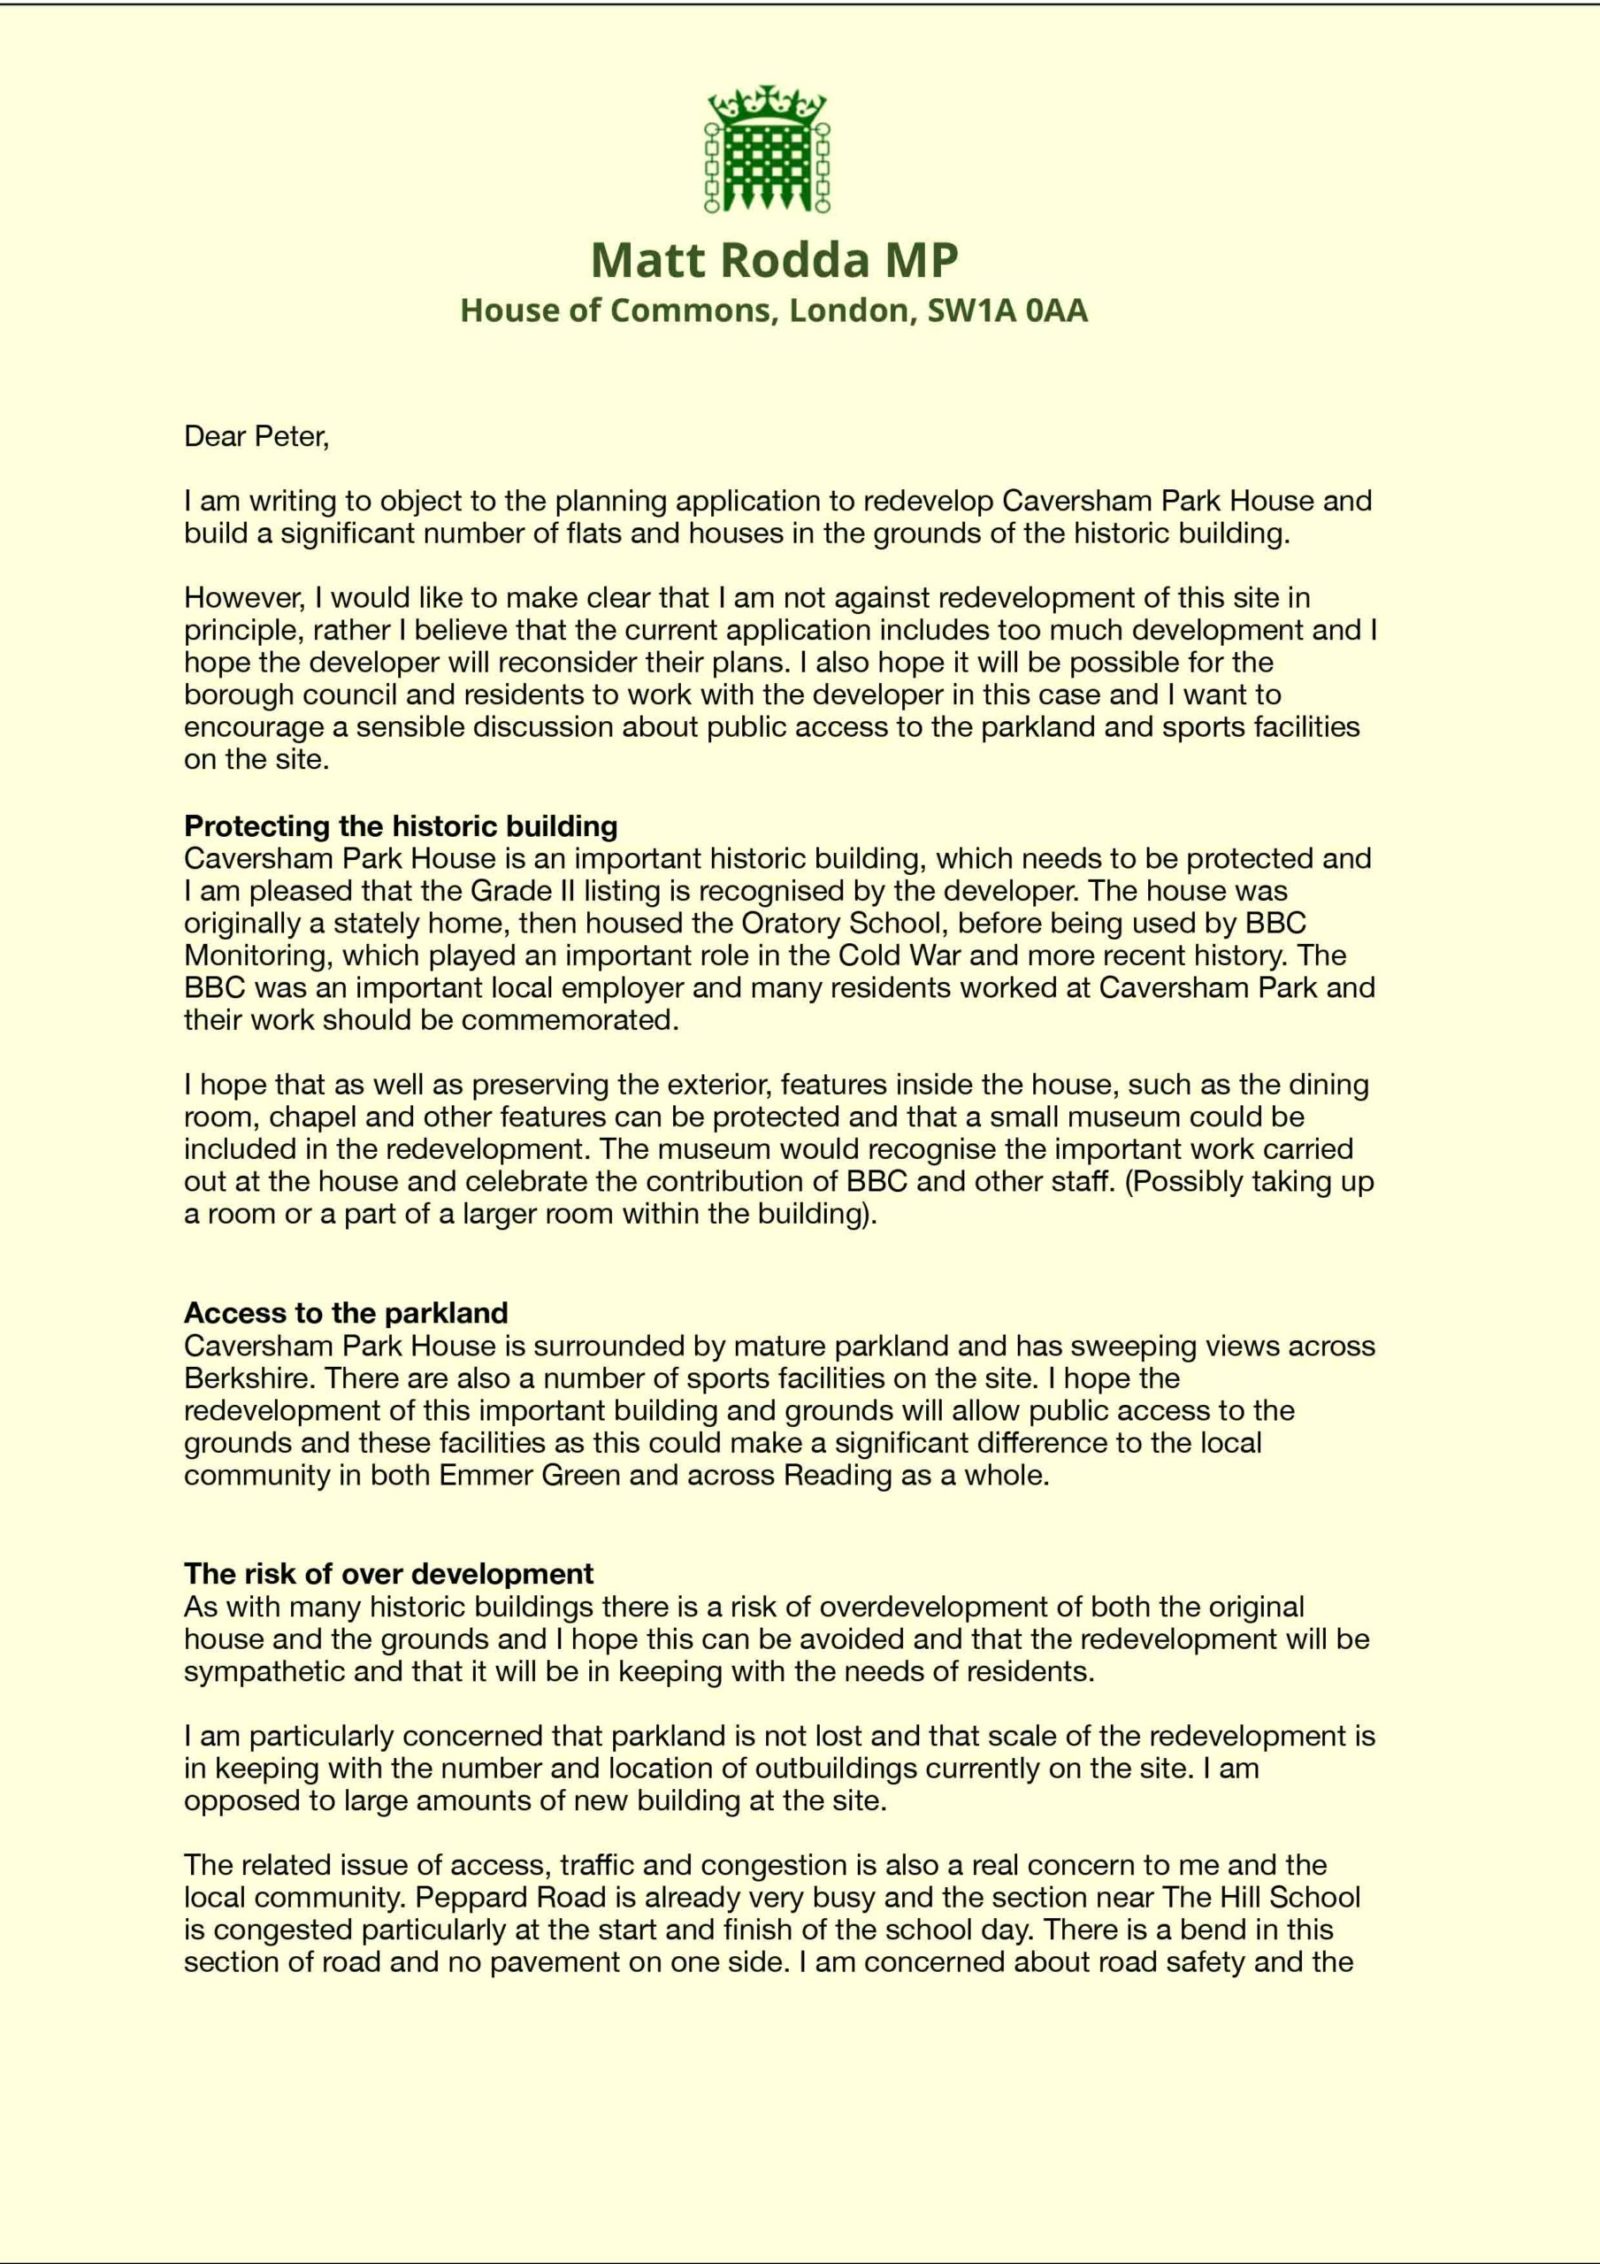 Side 1, Letter to Reading Council re Caversham Park House Development